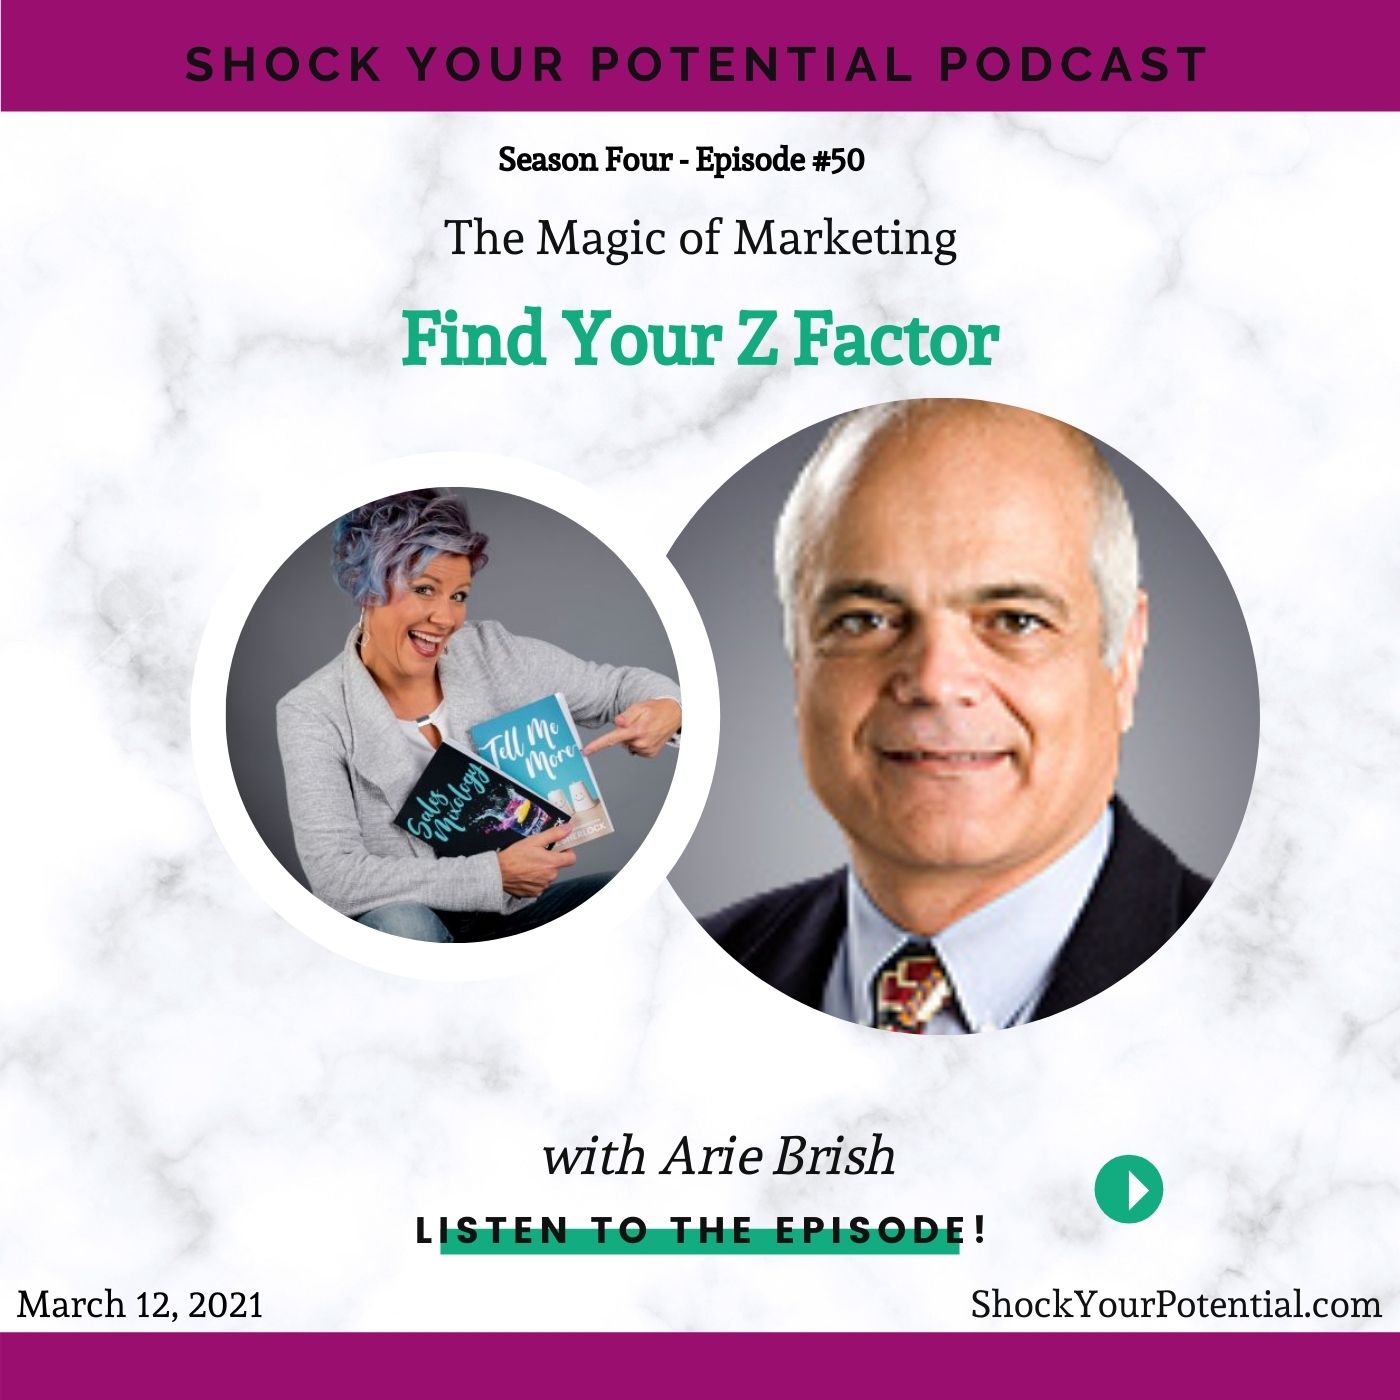 Find Your Z Factor – Arie Brish